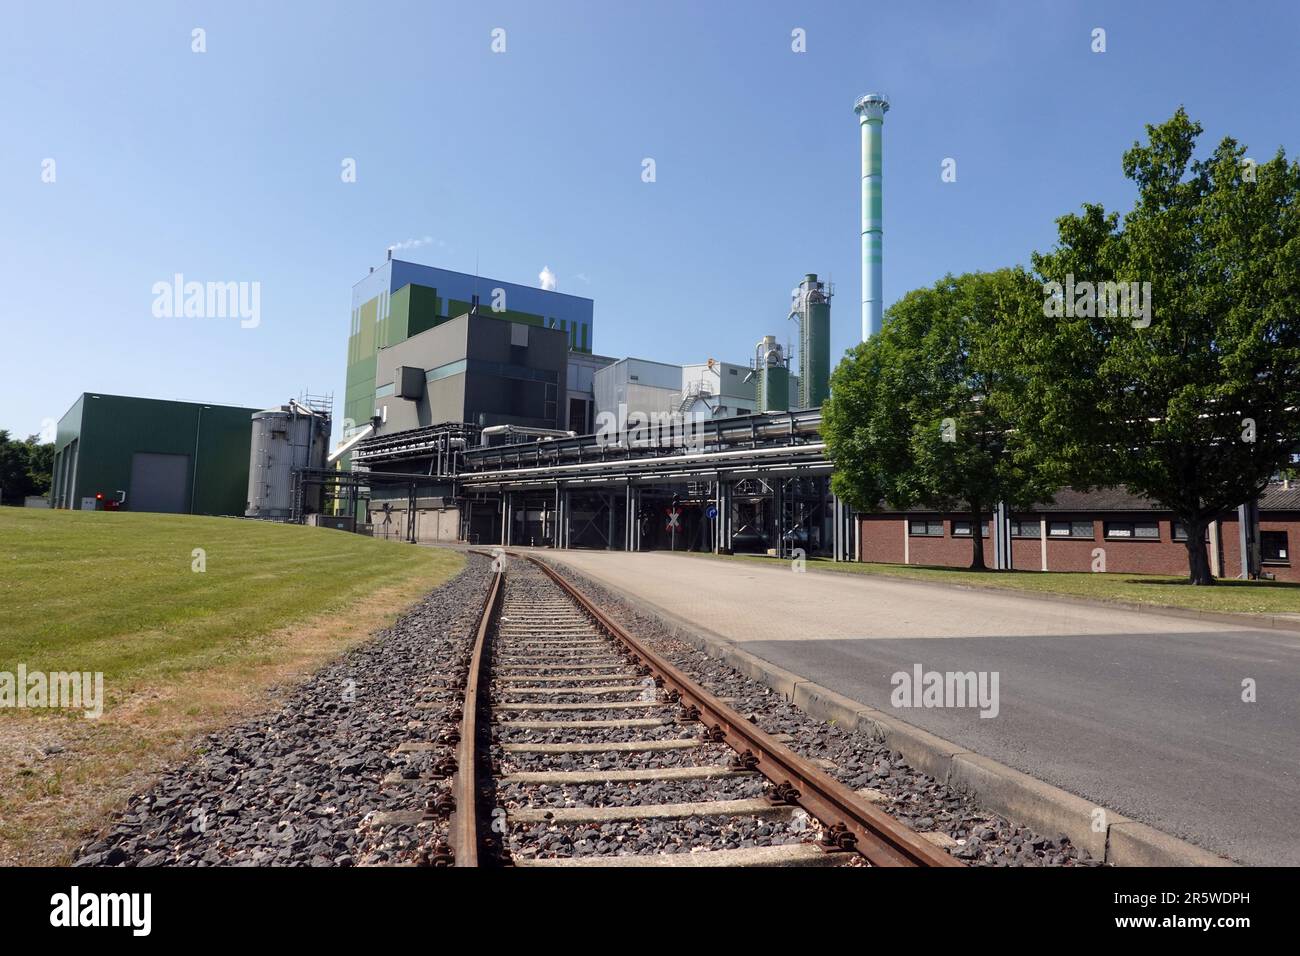 Smurfit Kappa Papierfabrik Zülpich - betriebseigenes Gaskraftwerk zur Stromerzeugung, Nordrhein-Westfalen, Deutschland Stock Photo